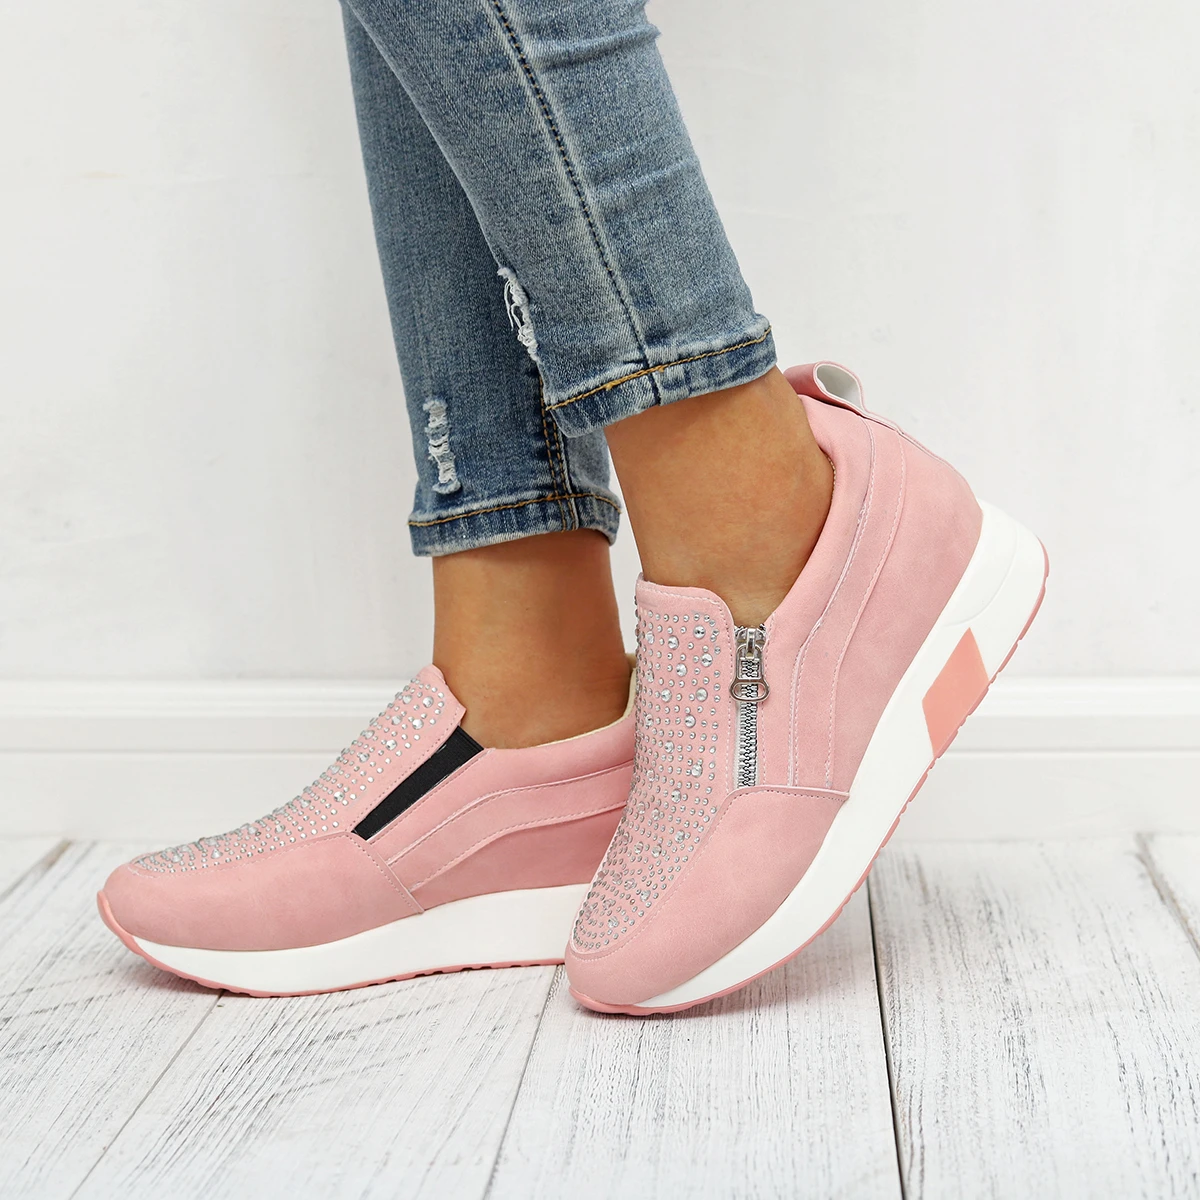 Mujeres bonitas zapatillas deporte agradable zapatos mujer negro alto blanco zapatillas rosa para las mujeres nueva moda cristal deportes al aire botas agradable|Botas hasta el tobillo| - AliExpress